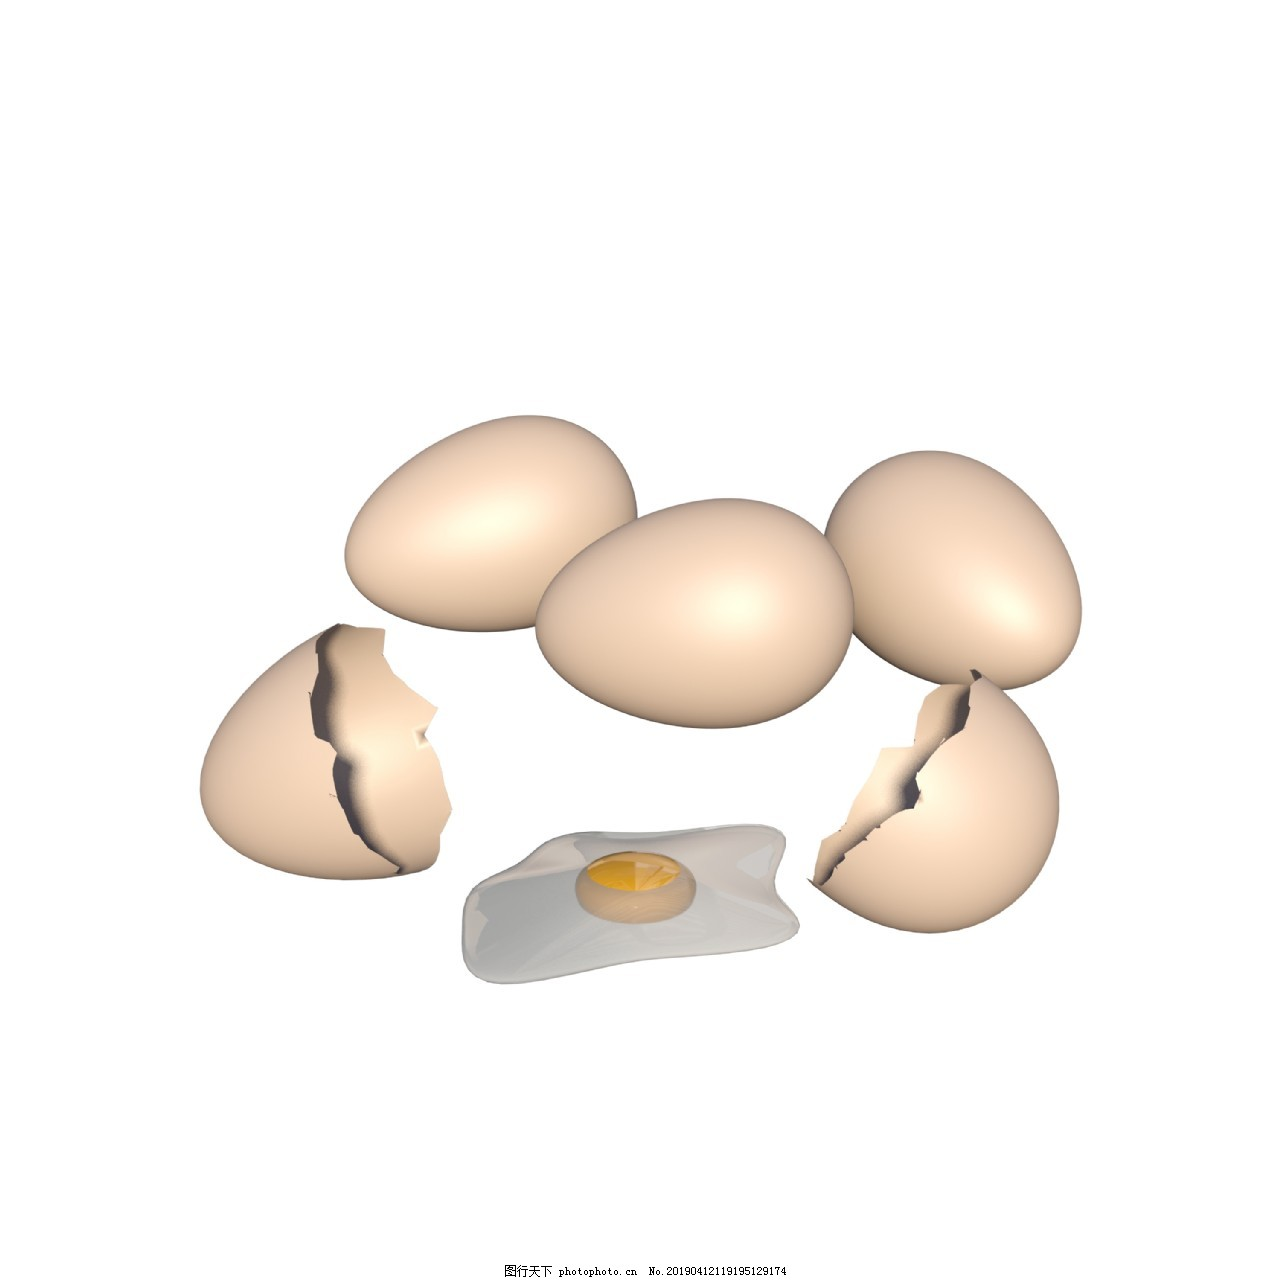 ‘~打碎的鸡蛋和蛋黄图片_生物静物_平面创作元素-  ~’ 的图片